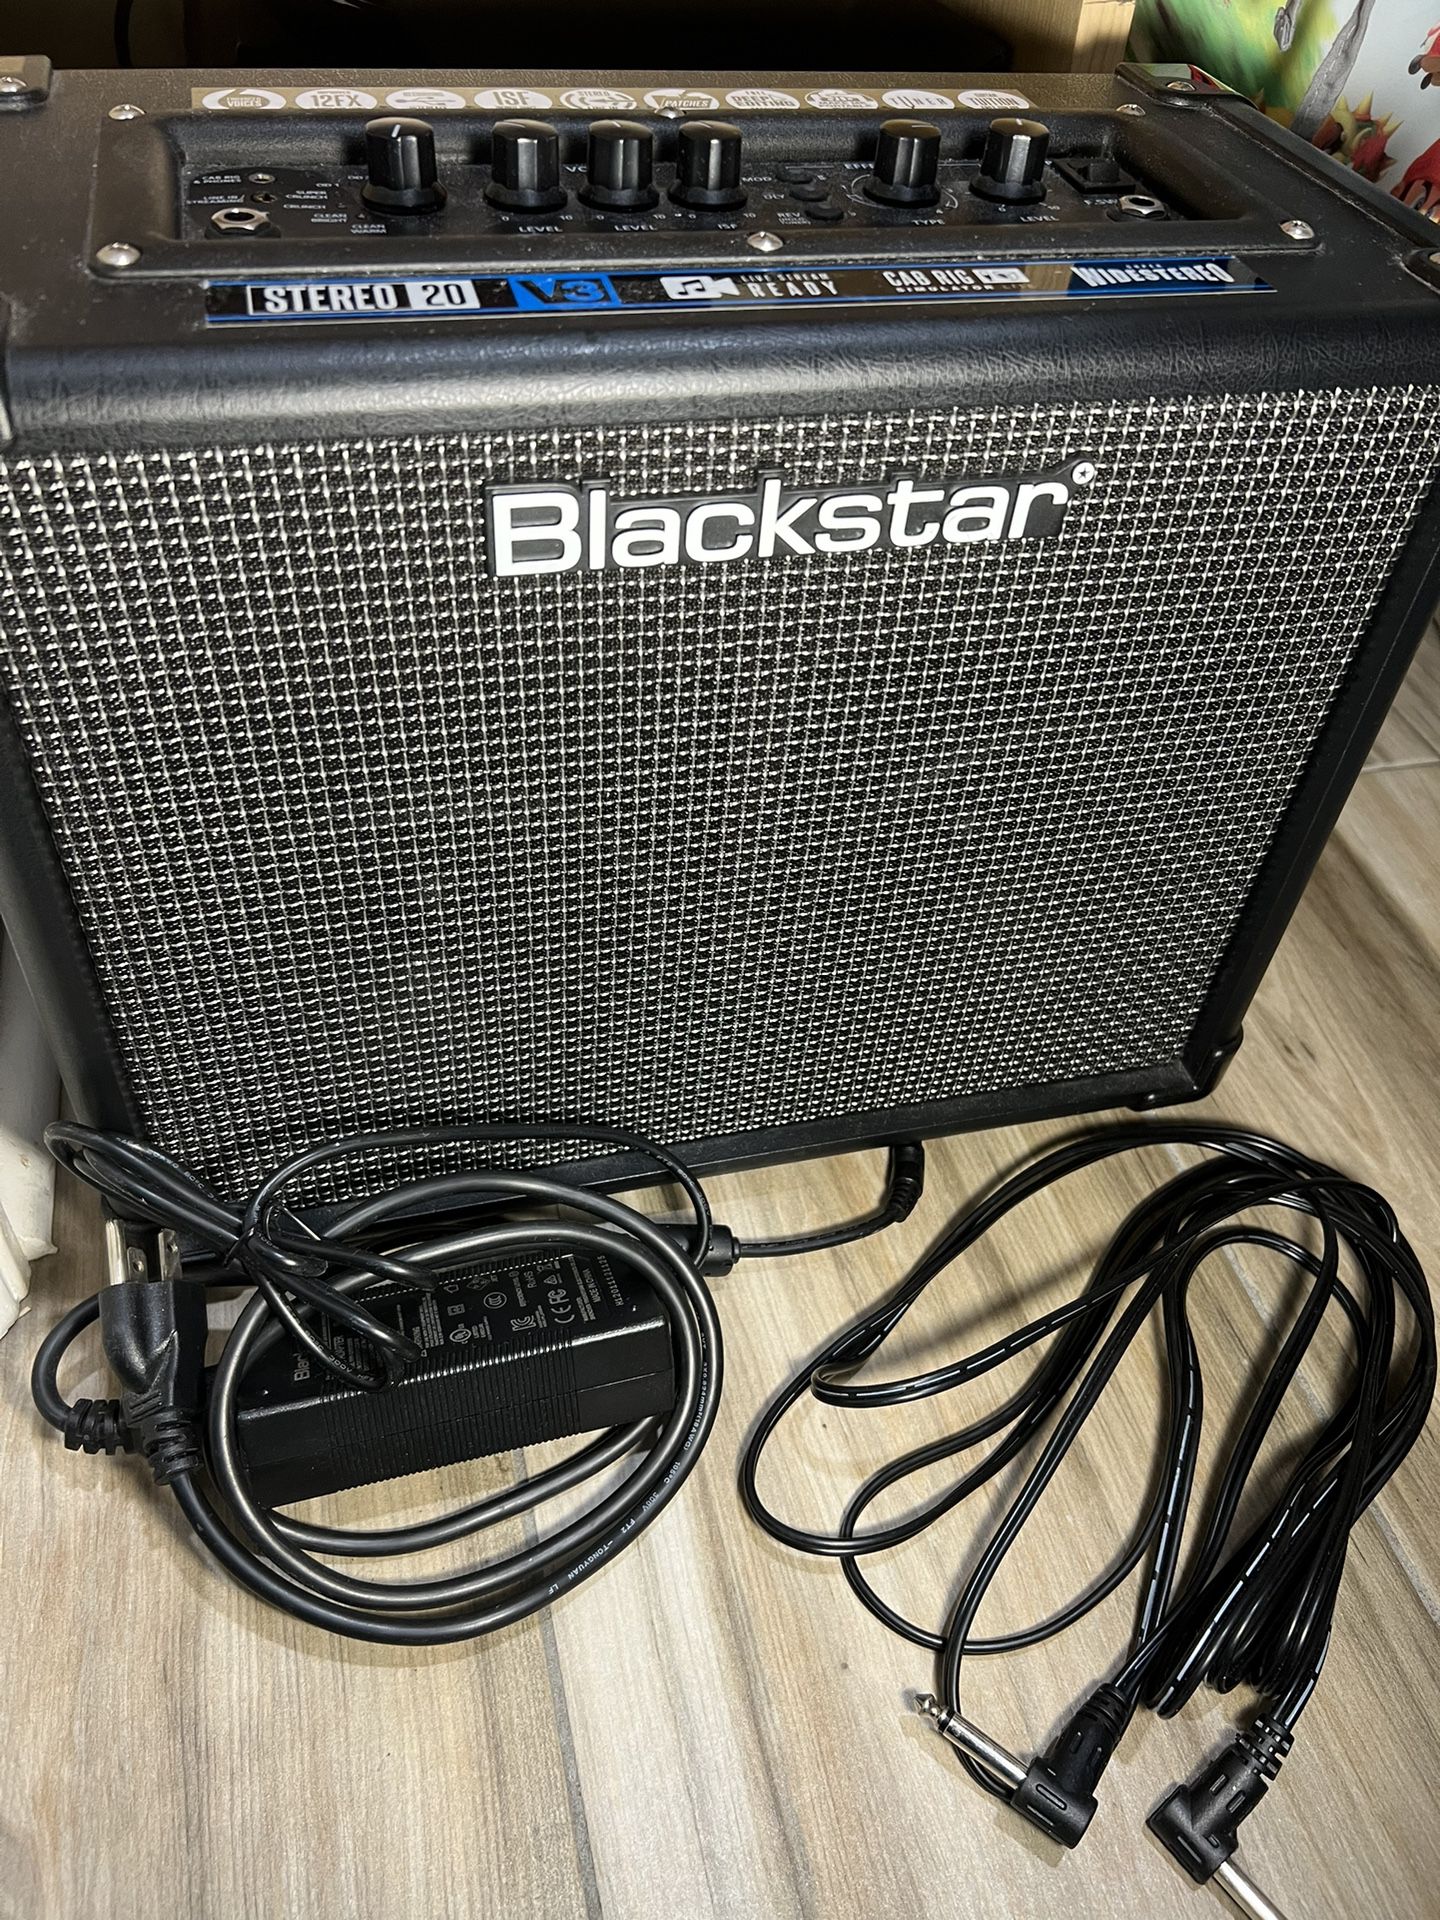 Blackstar Stereo 20 Guitar amplifier